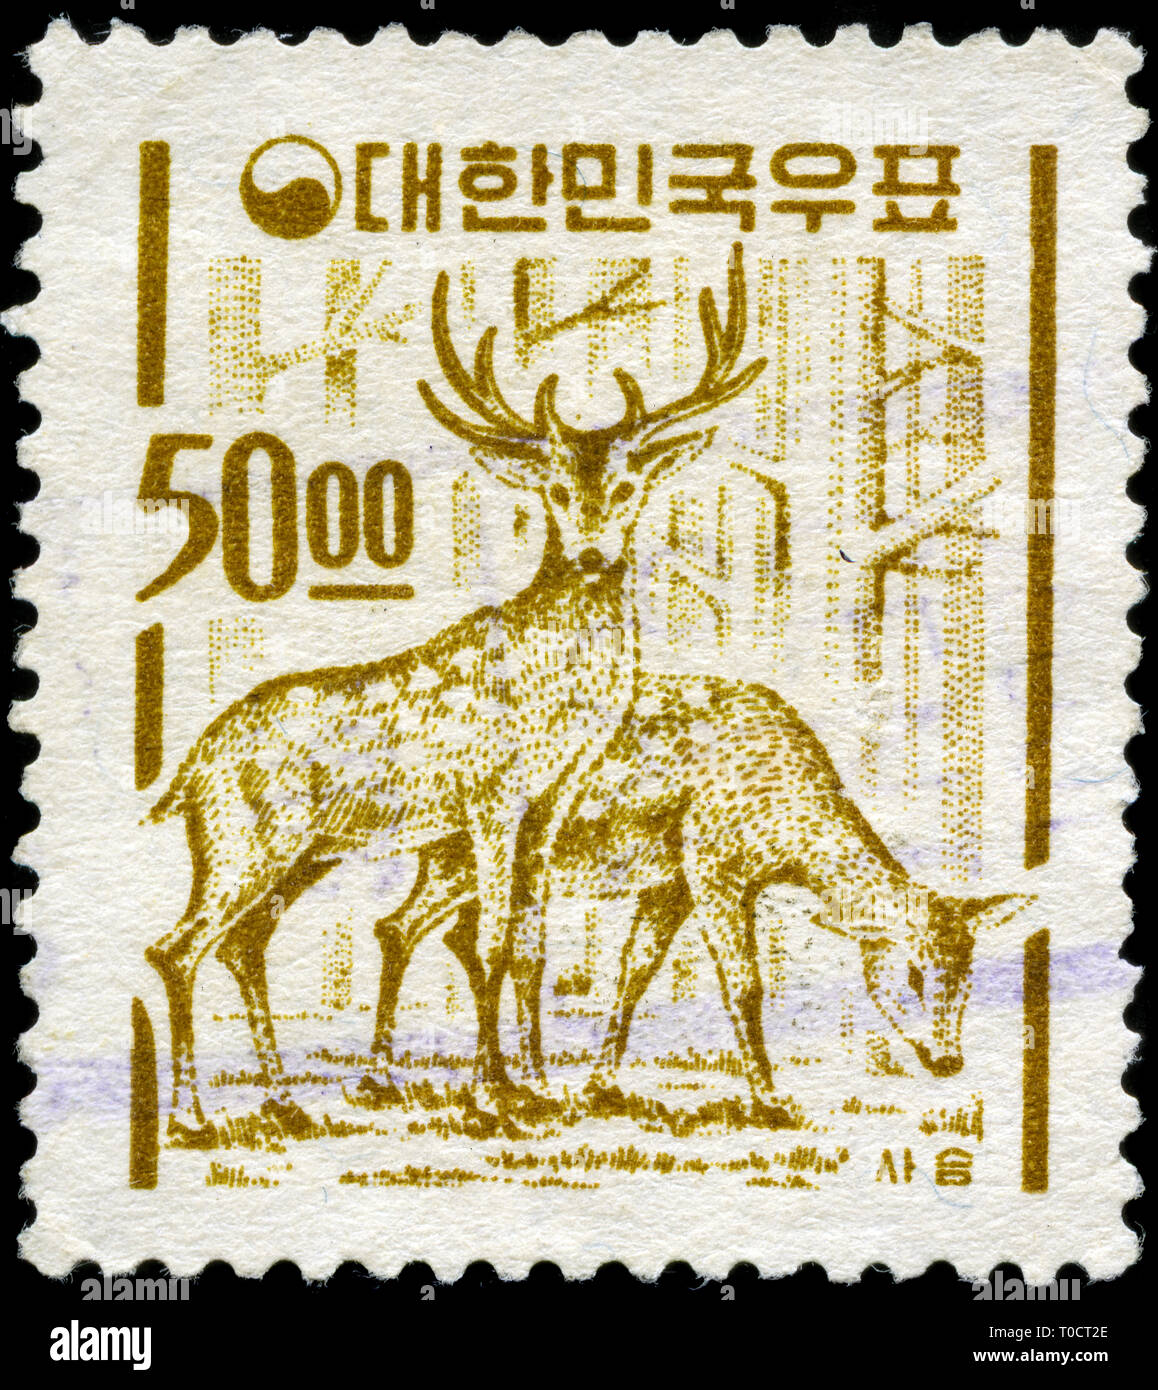 Timbre-poste de la Corée du Sud dans le pays - Vous y trouverez la série des symboles émis en 1963 Banque D'Images